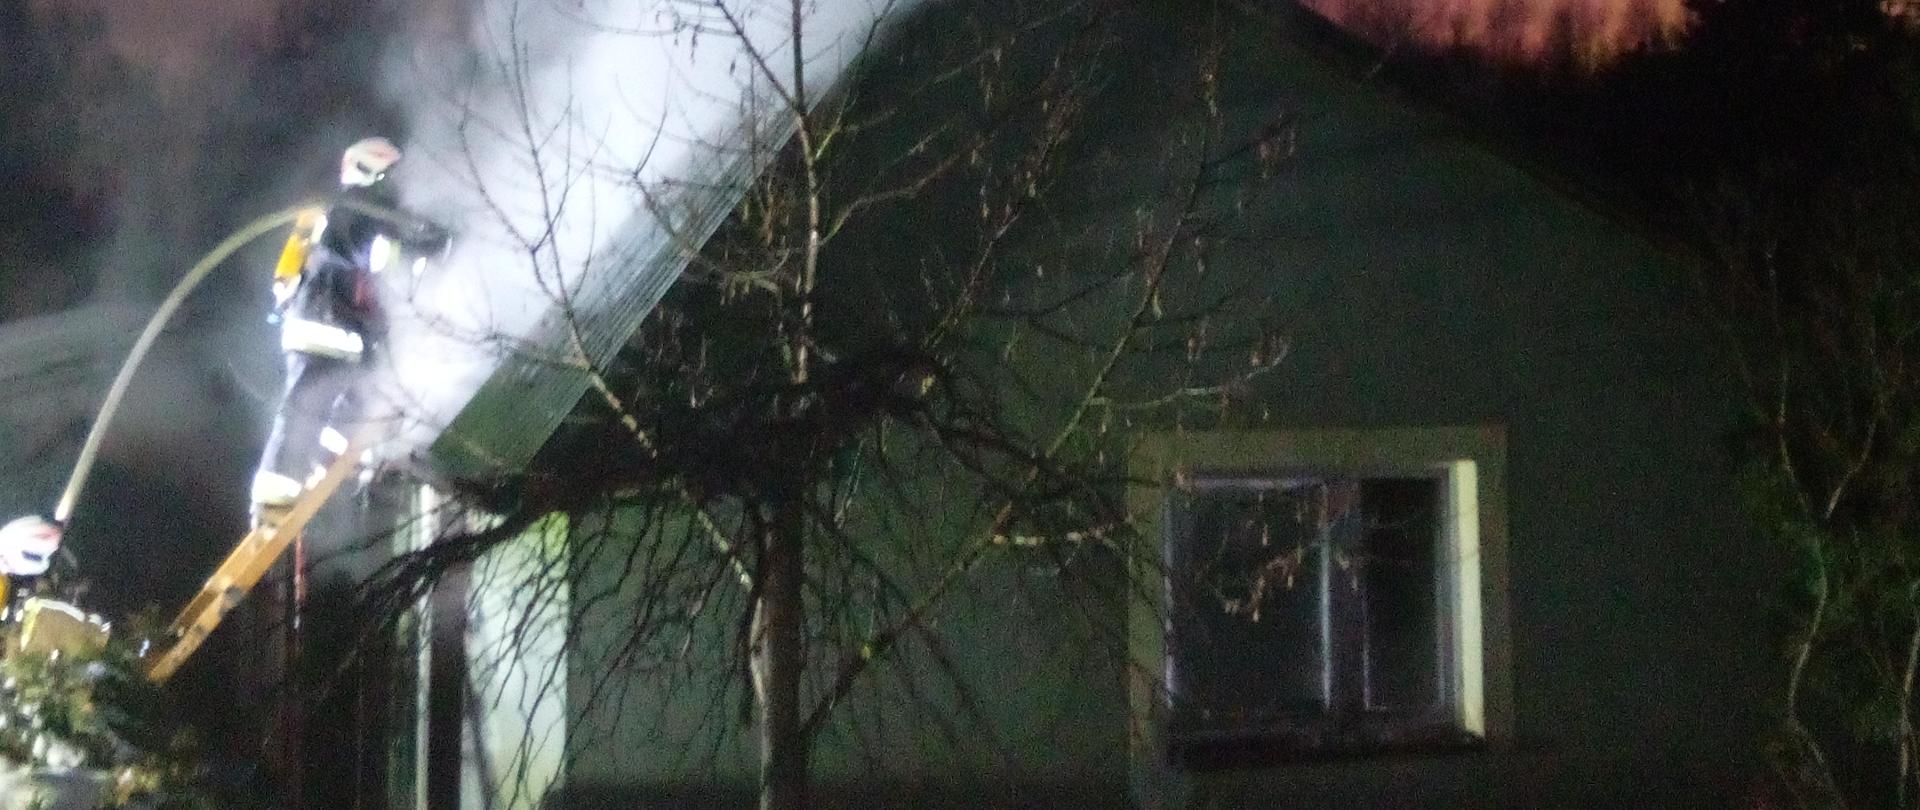 Zdjęcie przedstawia budynek gospodarczy, w którym doszło do pożaru. Na drabinie przystawionej do dachu stoi strażak podający strumień wody do wnętrza obiektu, a nad budynkiem unoszą się kłęby dymu i pary wodnej.